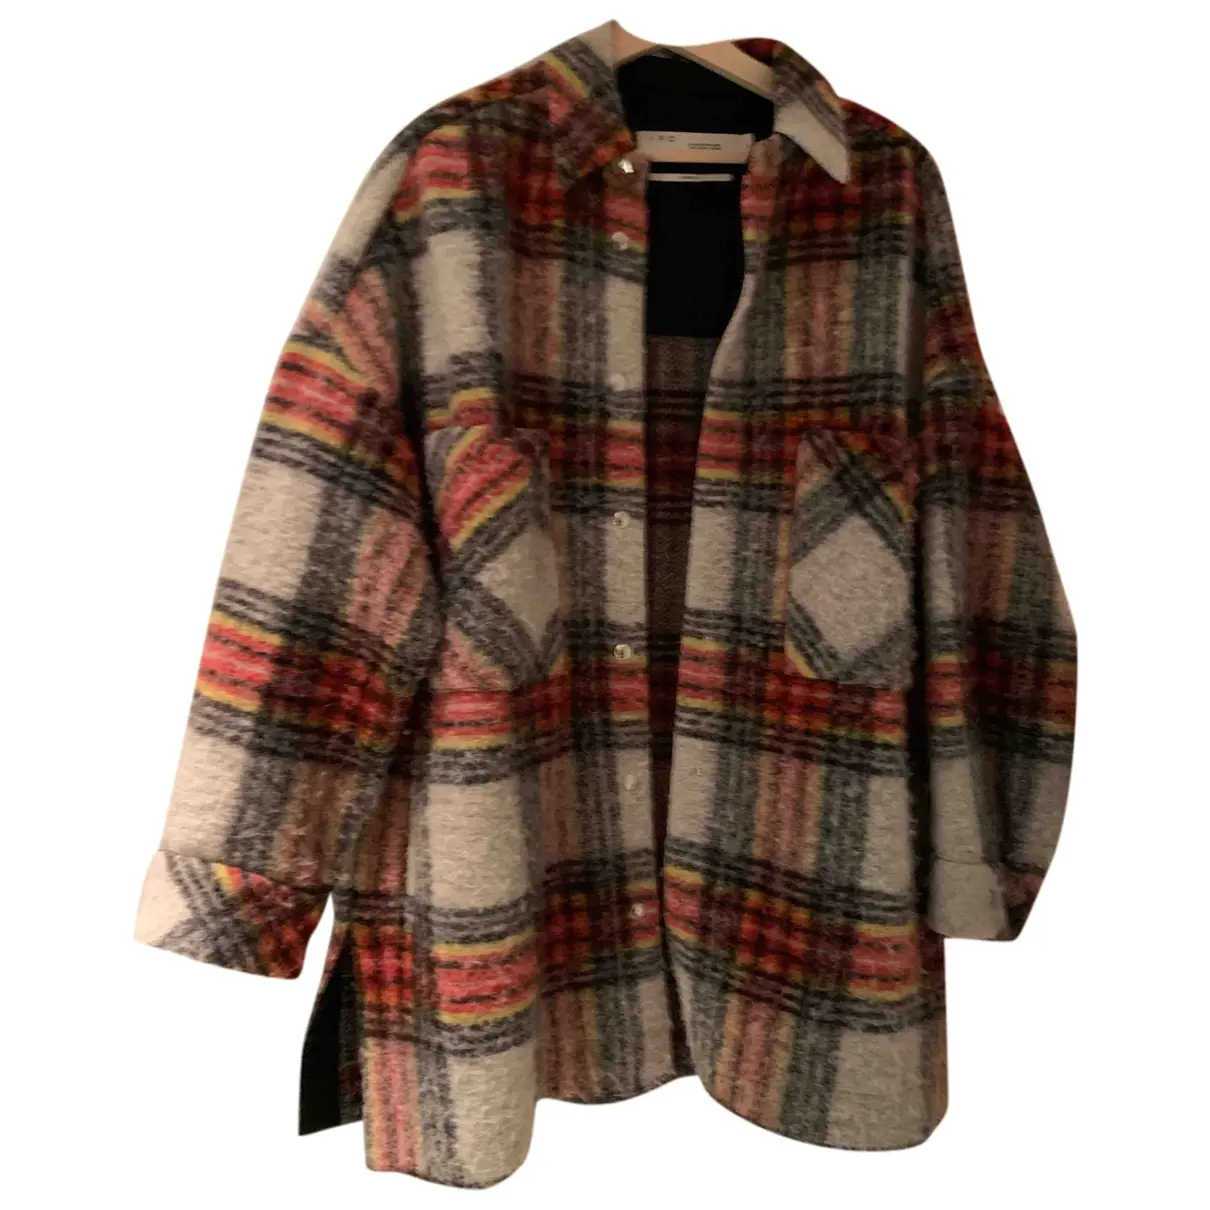 Fall Winter 2019 wool jacket Iro